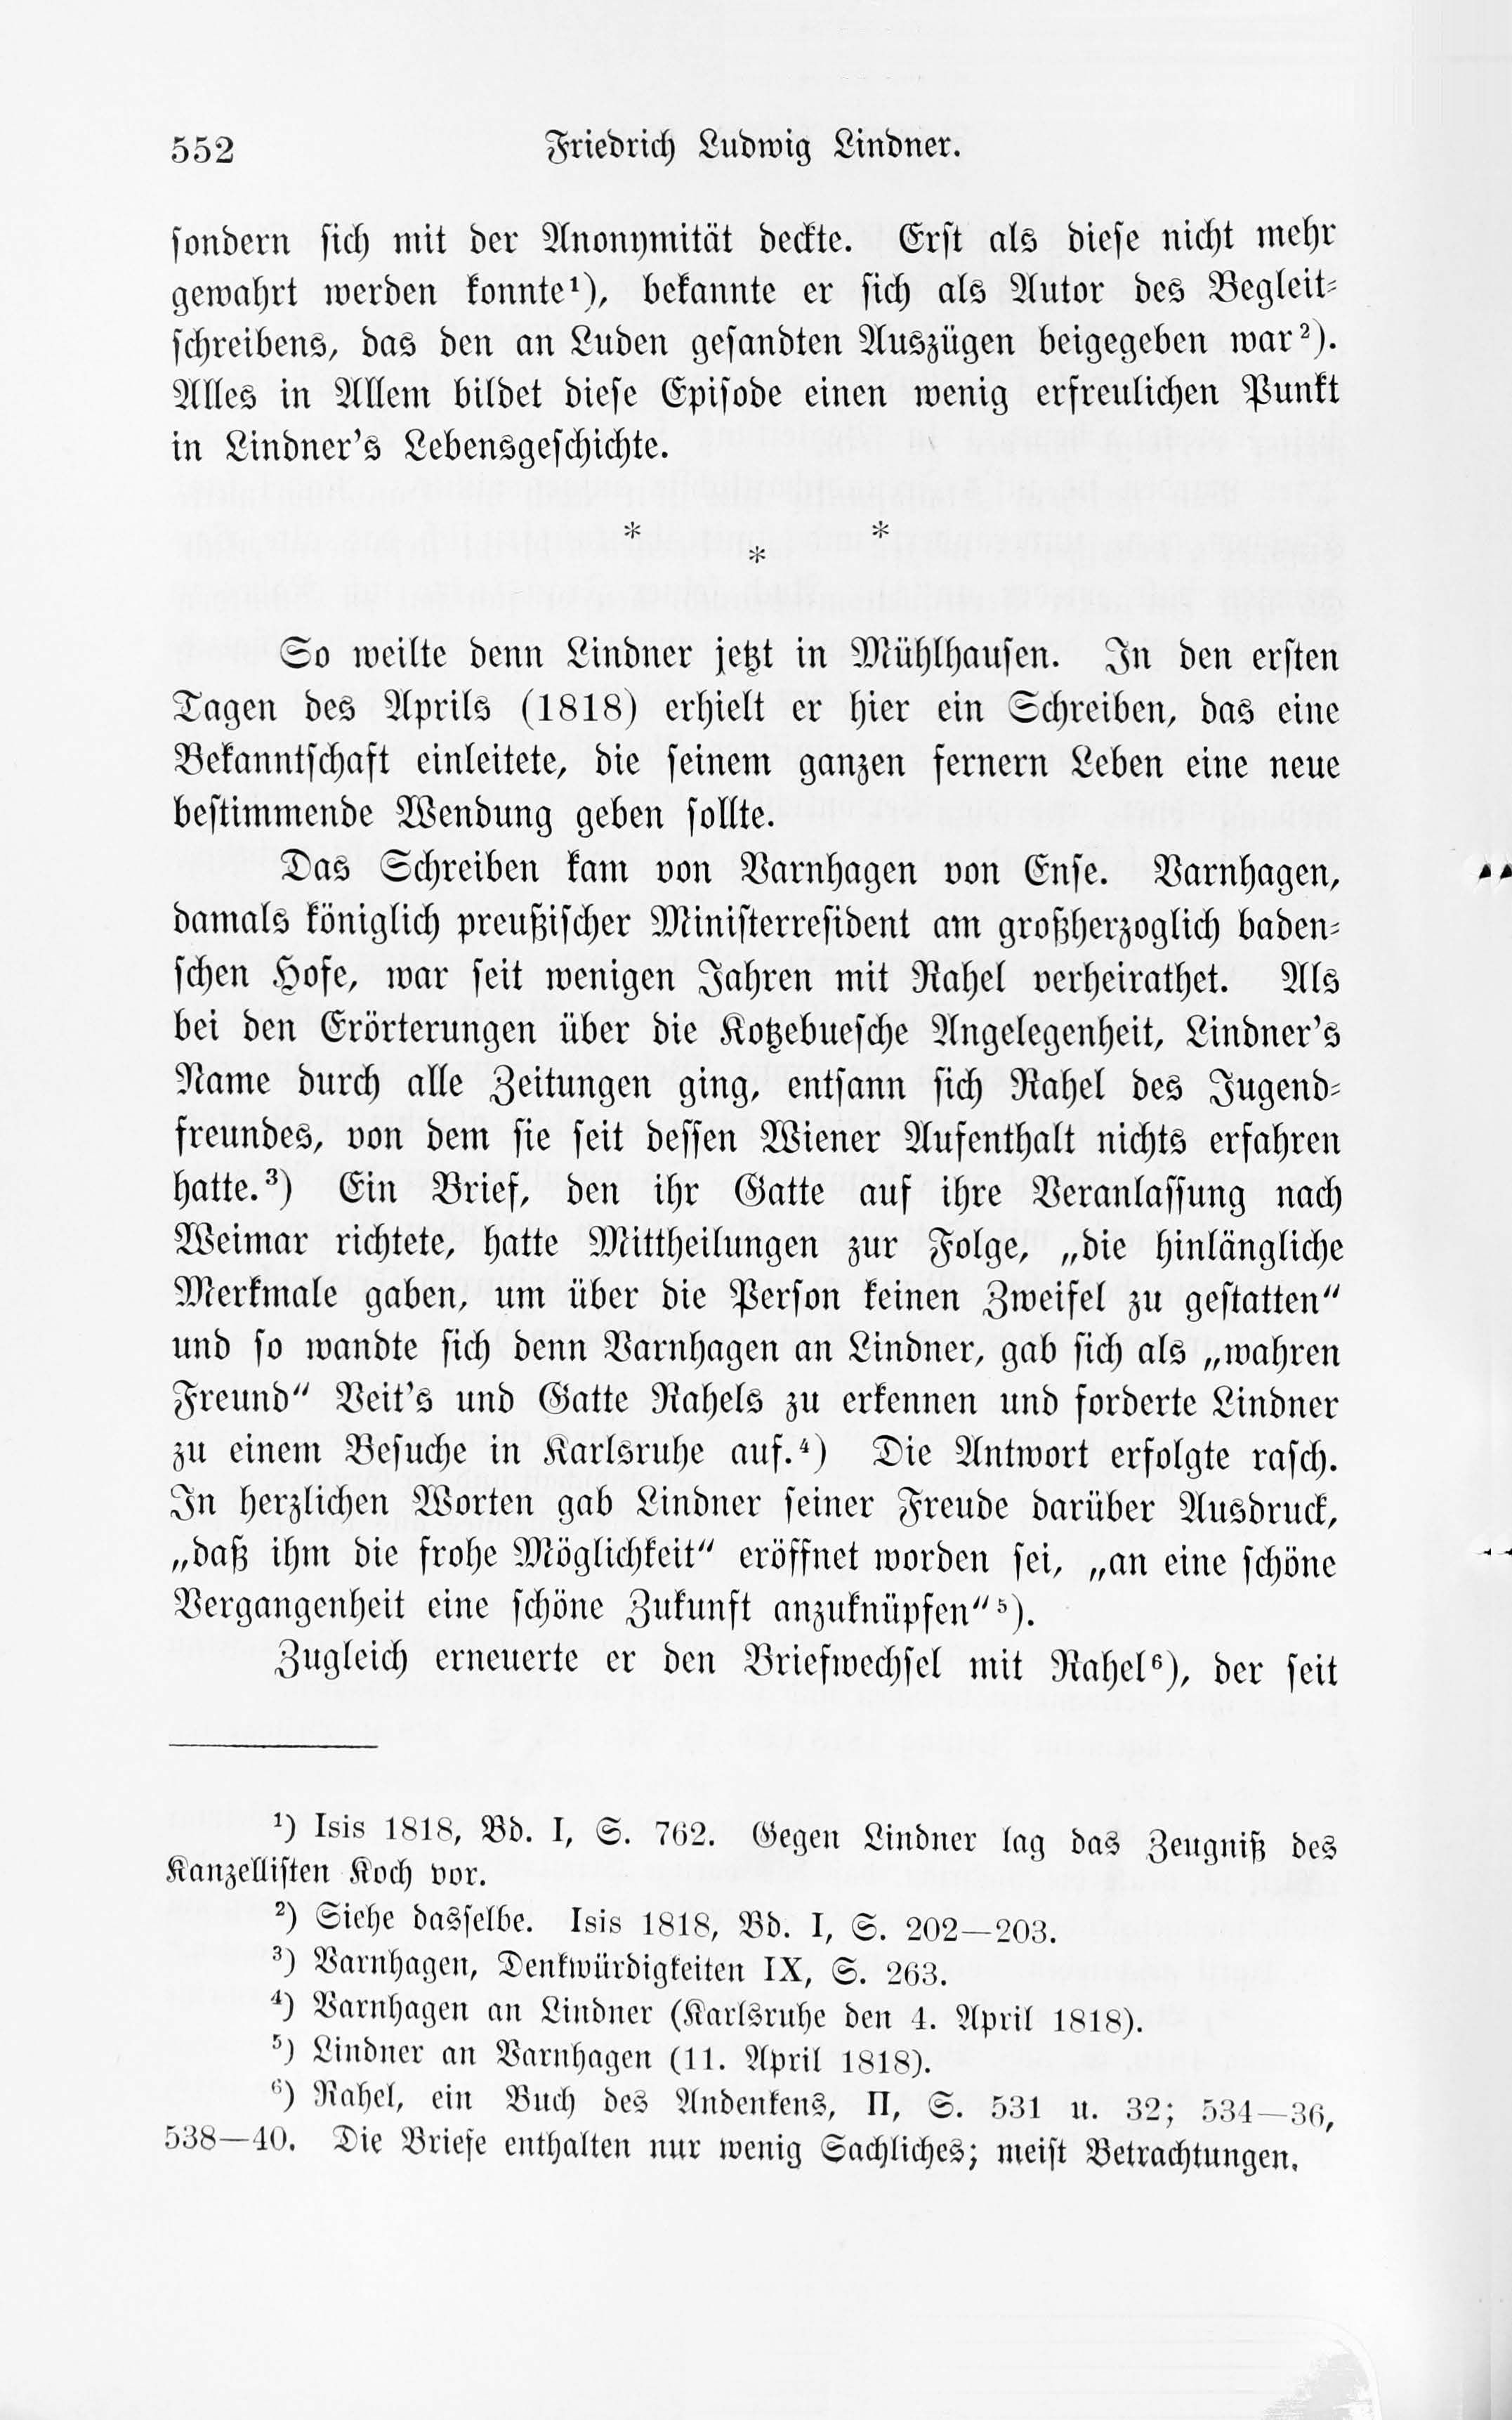 Leben und Schriften des Kurländers Friedrich Ludwig Lindner [1] (1895) | 22. Main body of text